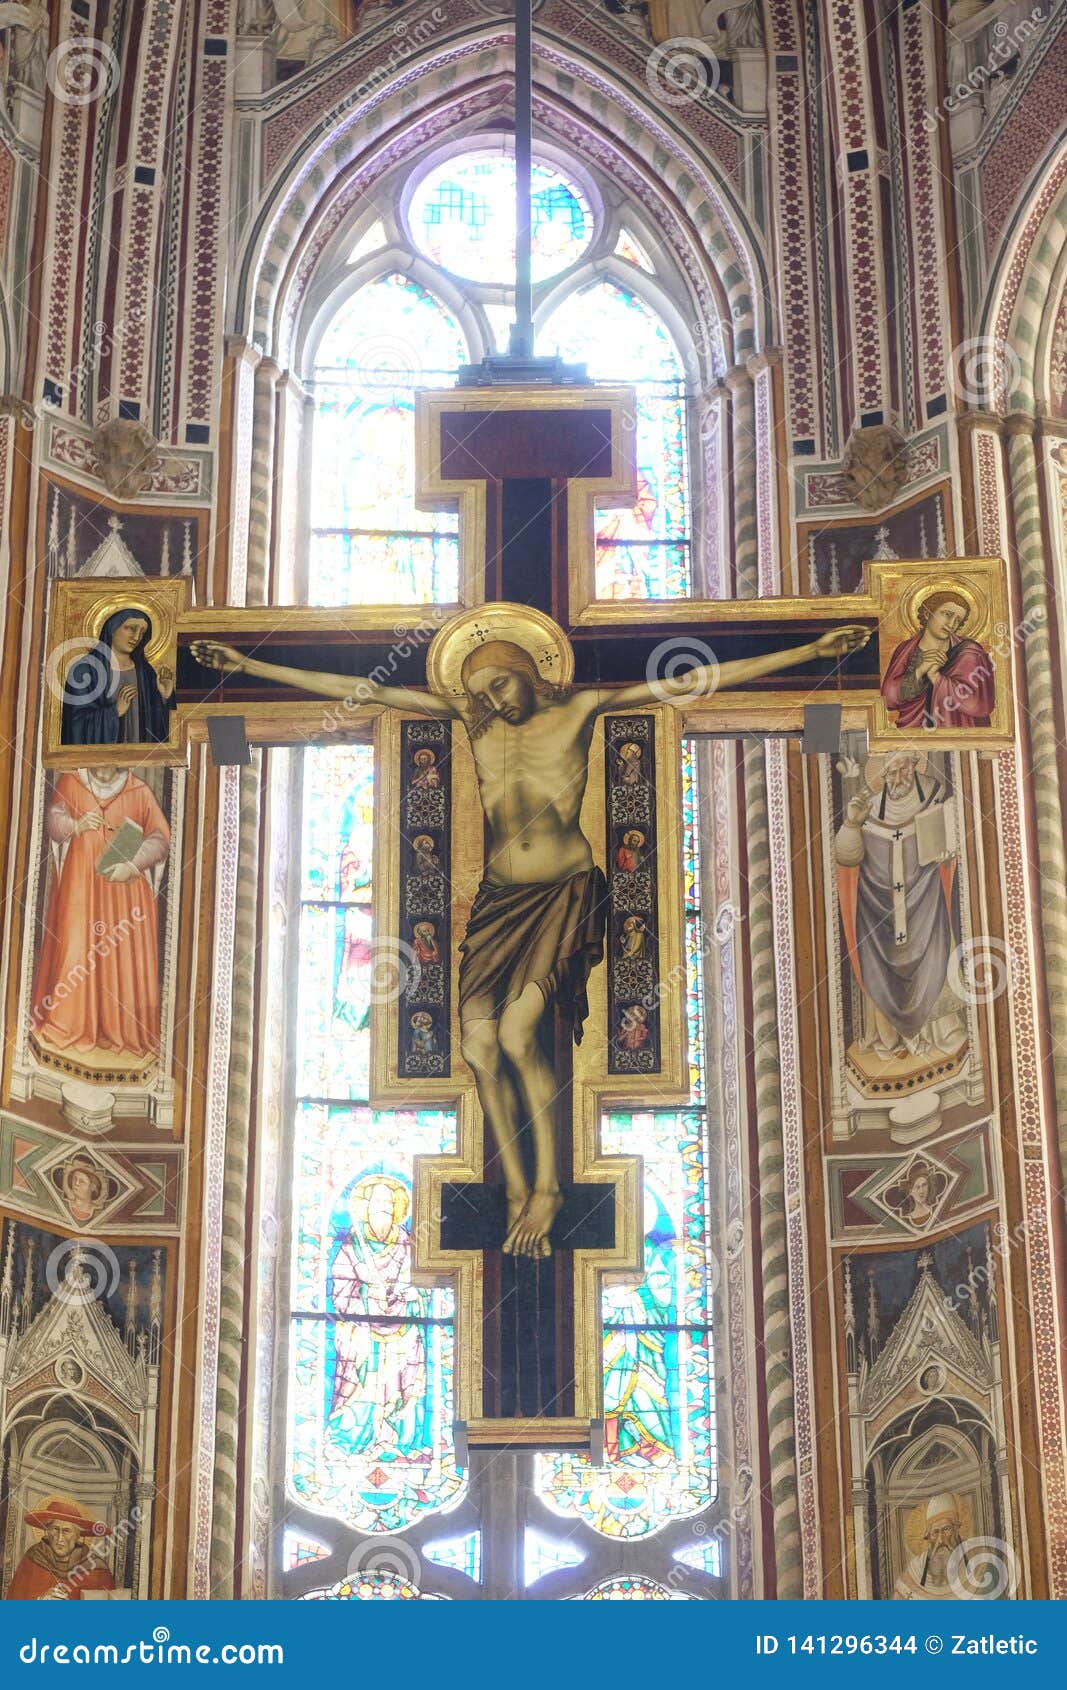 maestro di figlineÃ¢â¬â¢s painted wooden crucifix above the main altar in the basilica di santa croce in florence